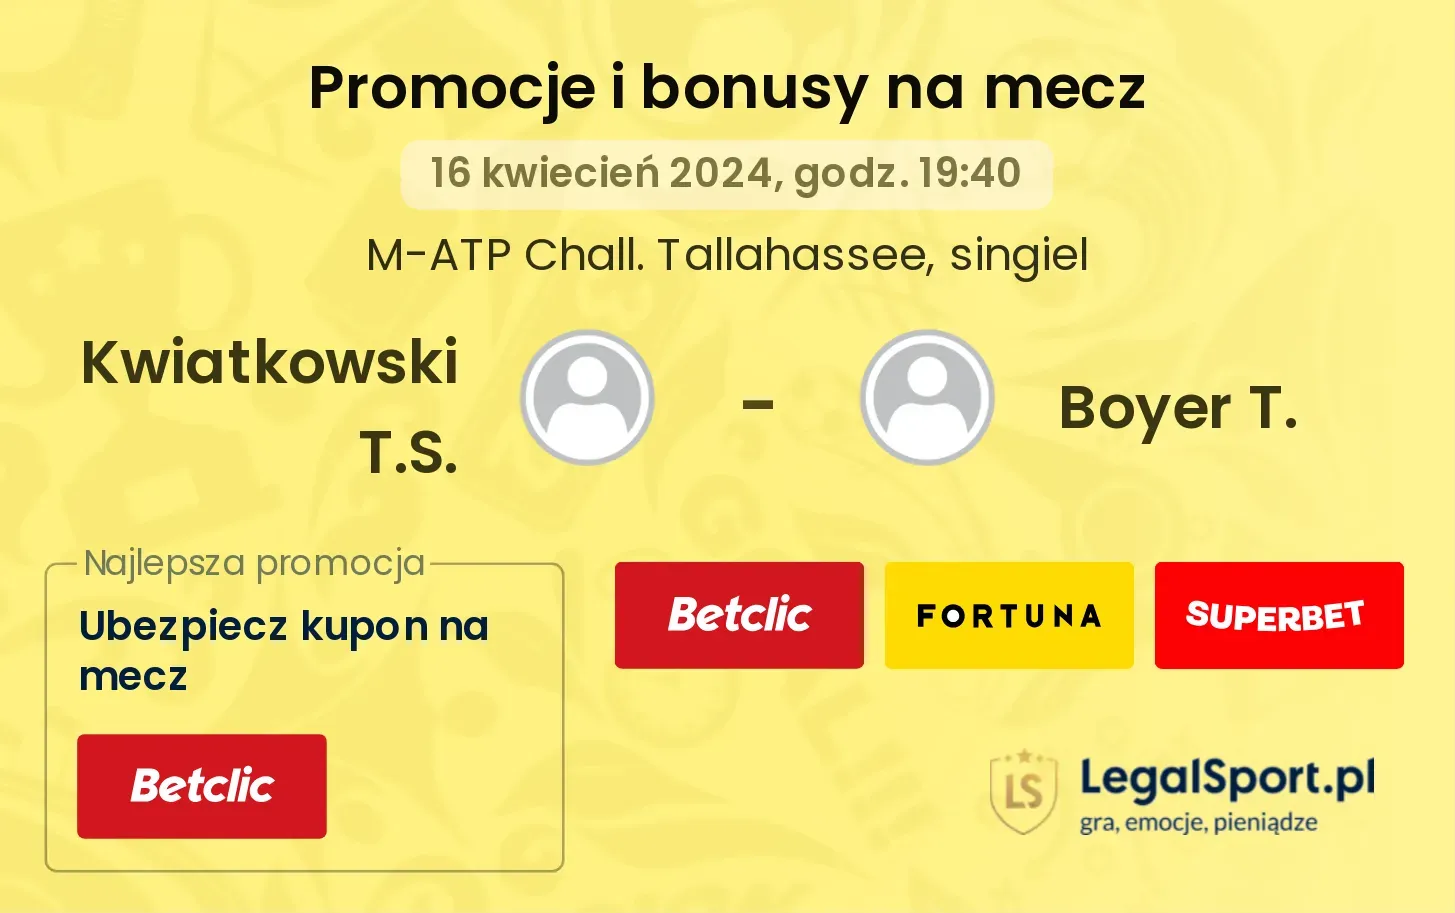 Kwiatkowski T.S. - Boyer T. promocje bonusy na mecz